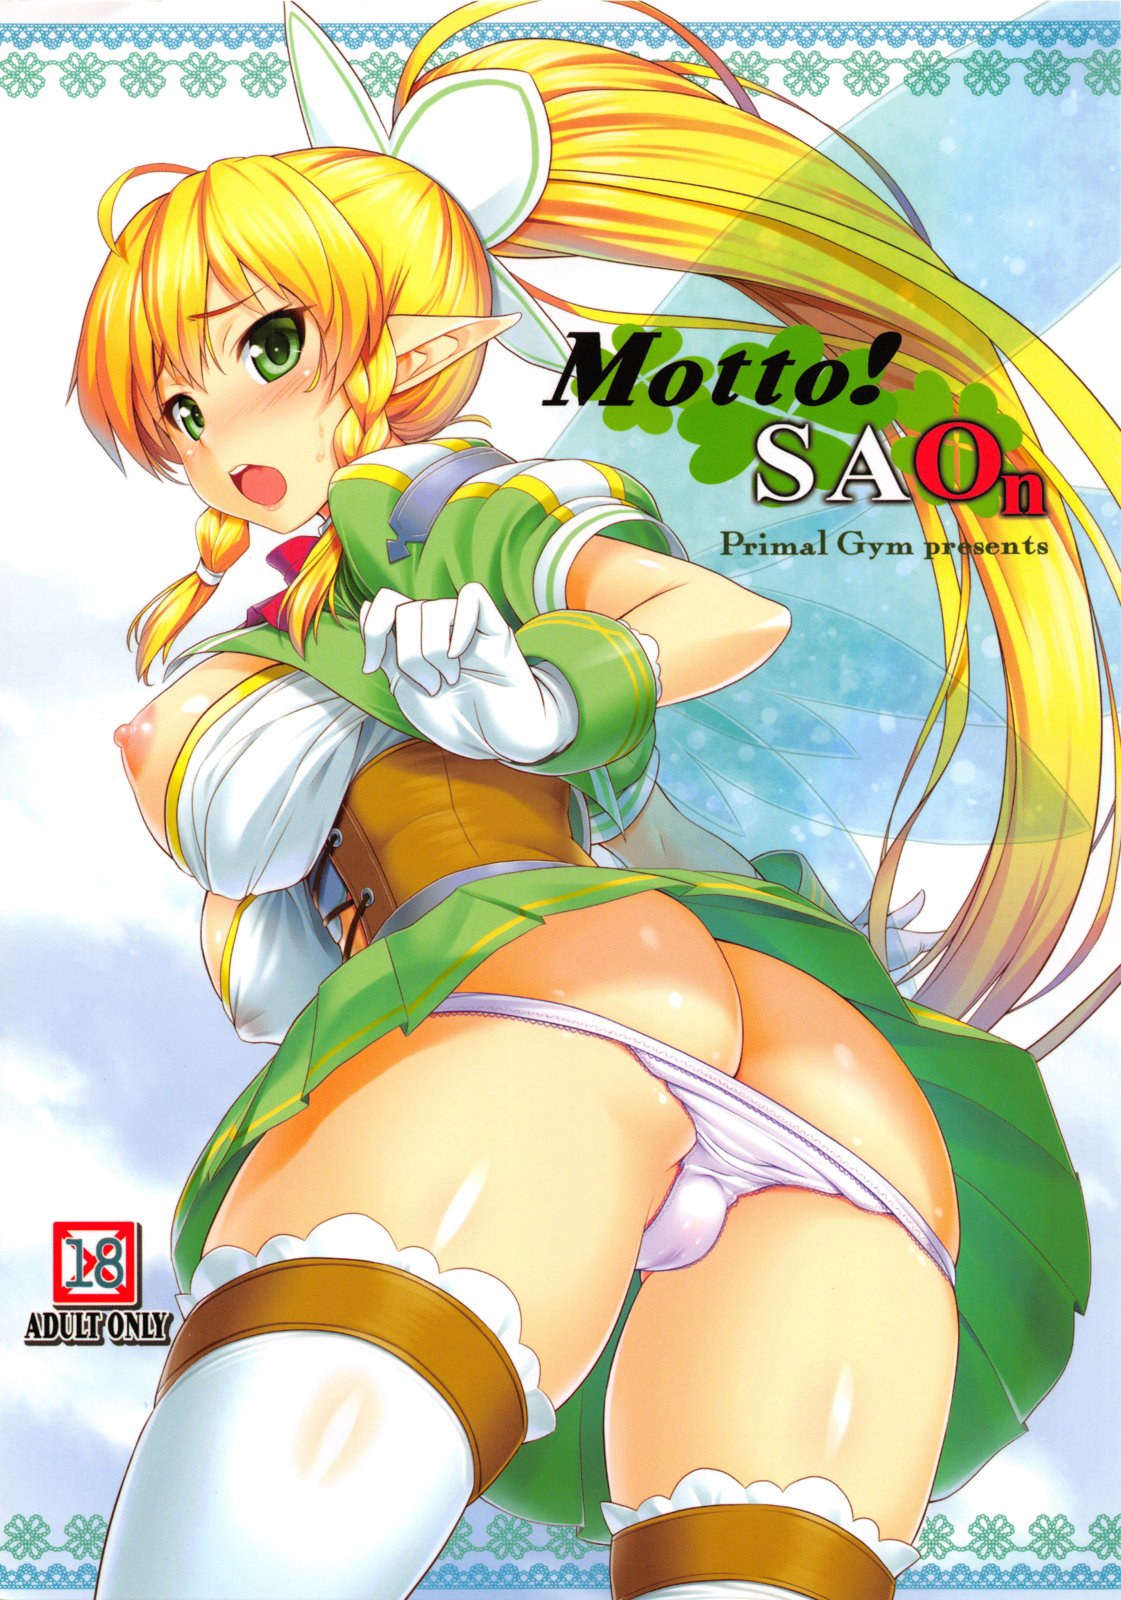 SC60 Primal Gym Kawase Seiki MottoSAOn MoreSAOn Sword Art Online English doujin moe.us 736833 0001